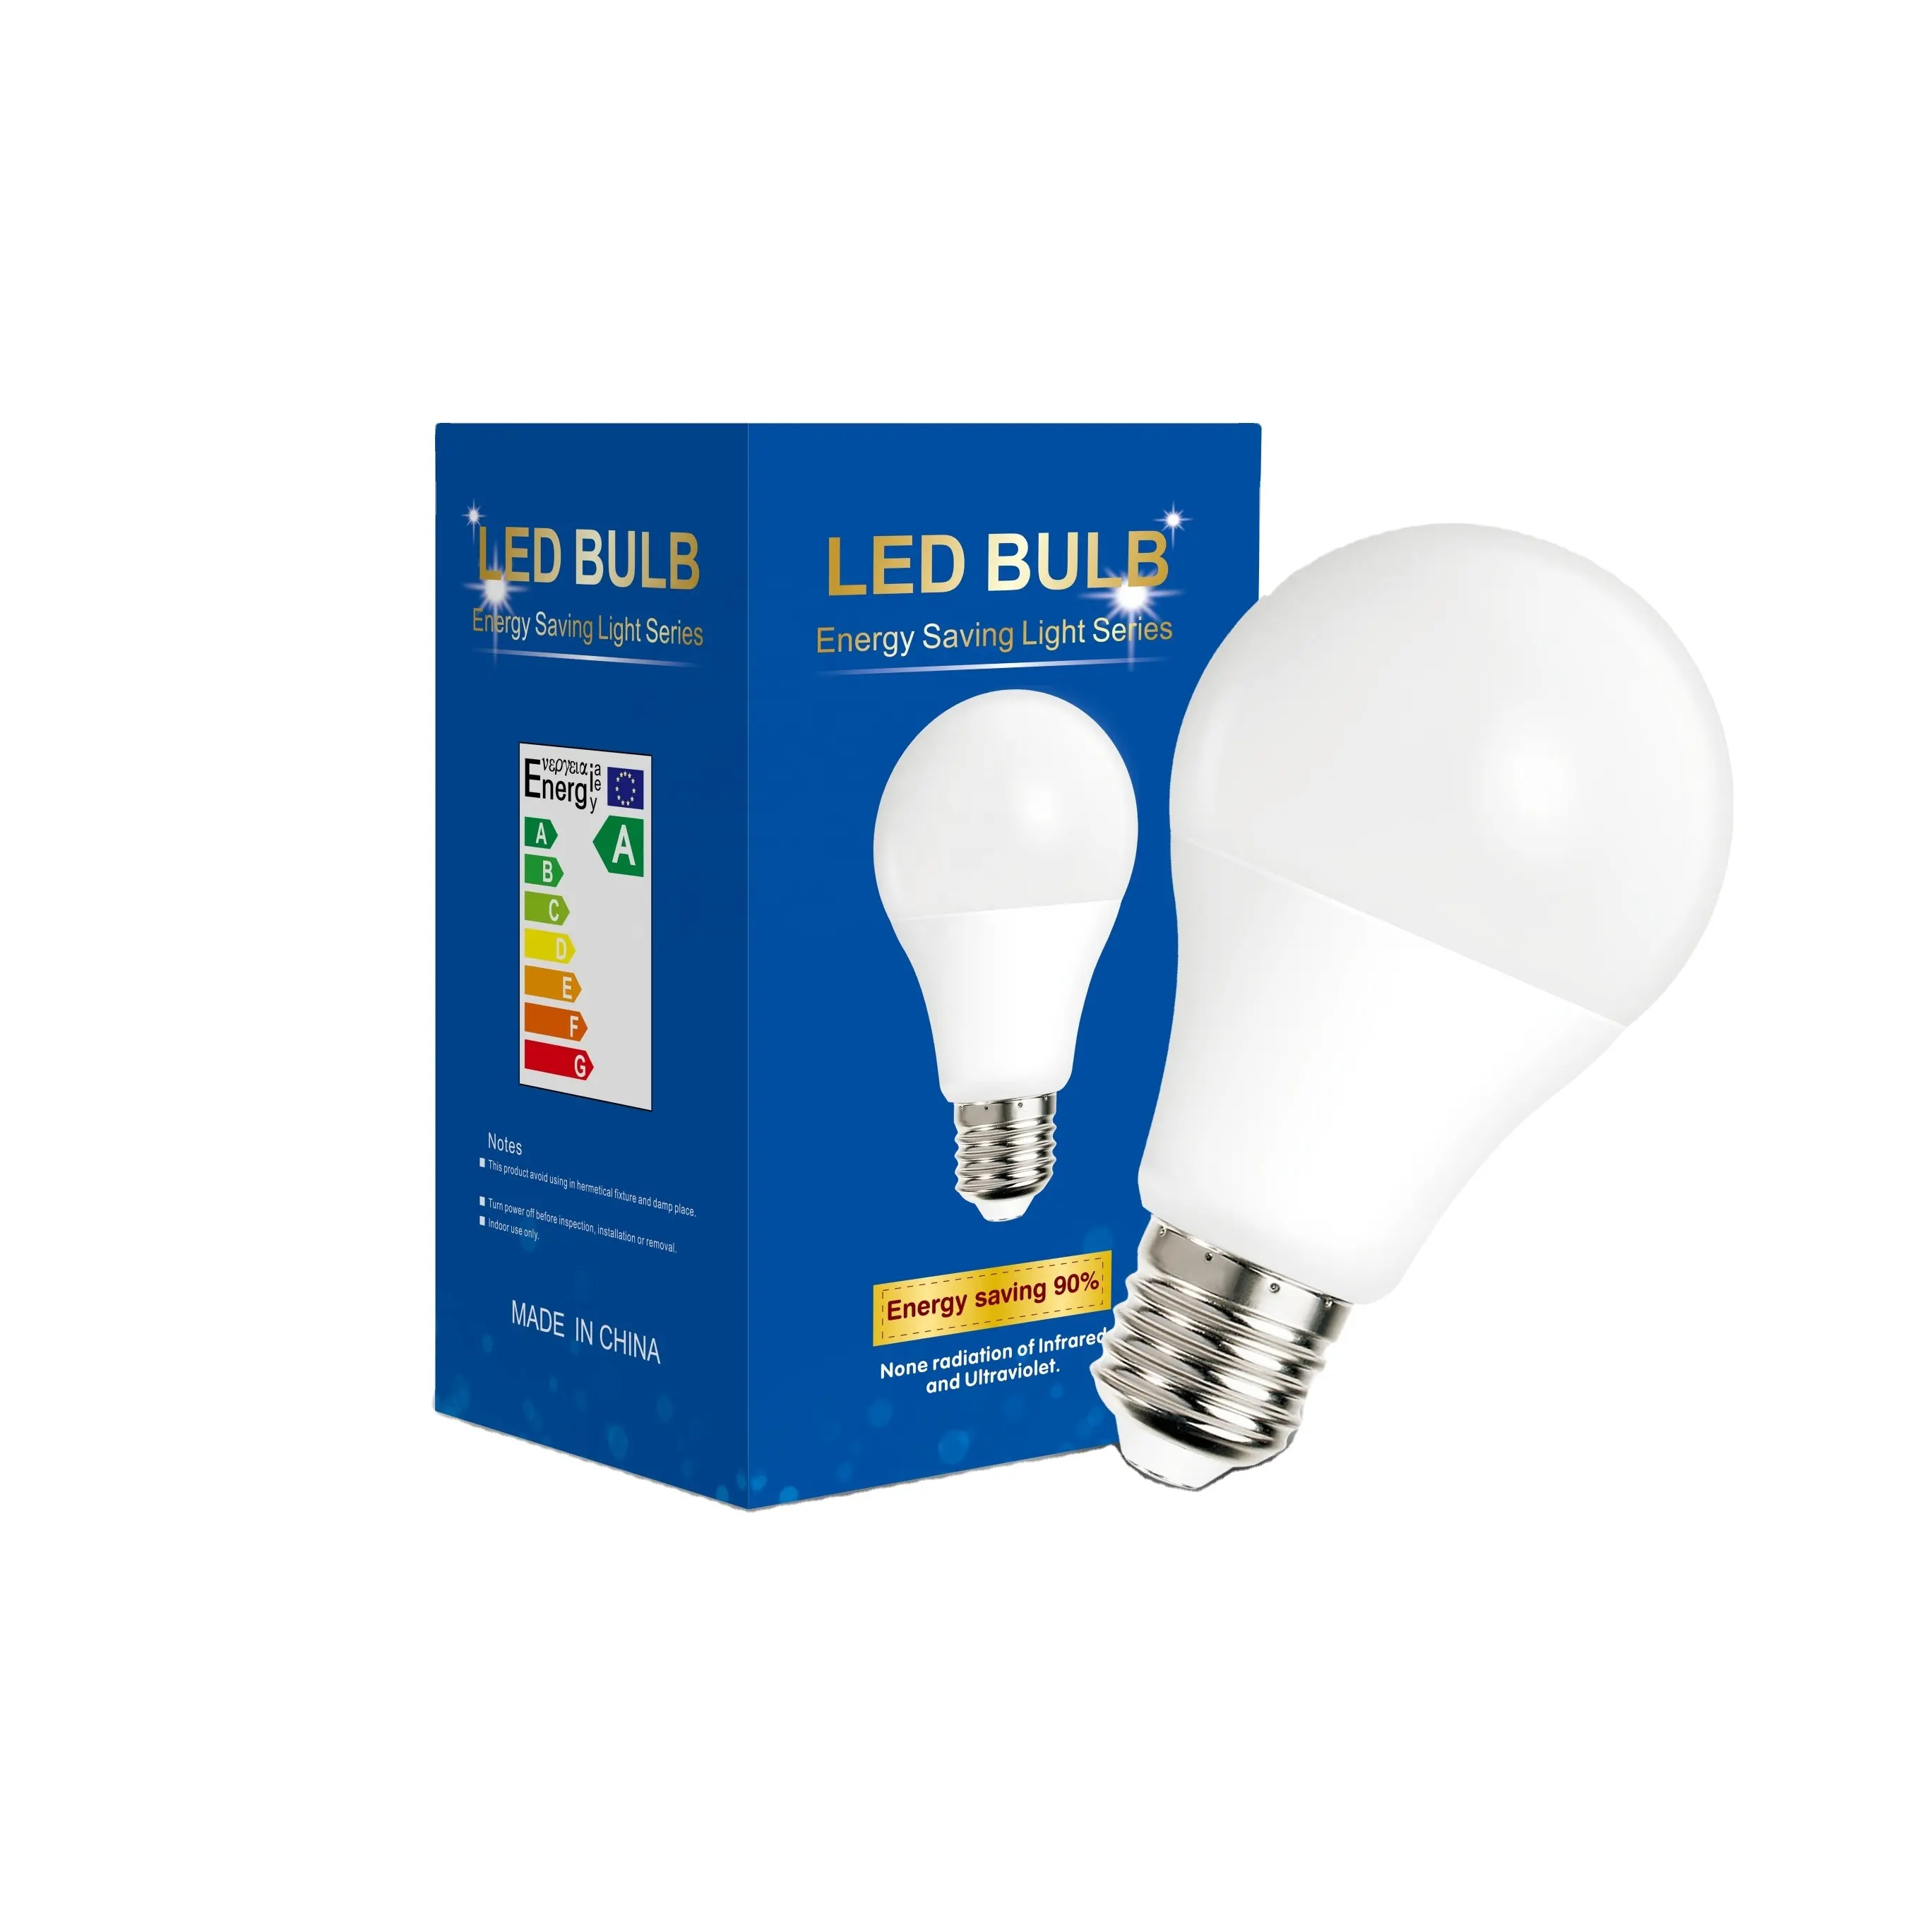 Residential lampada led bulb lamps focos 3W 5W 7W 9W 12W 15W 18W 24W e27 b22 bulb light raw material led bulb